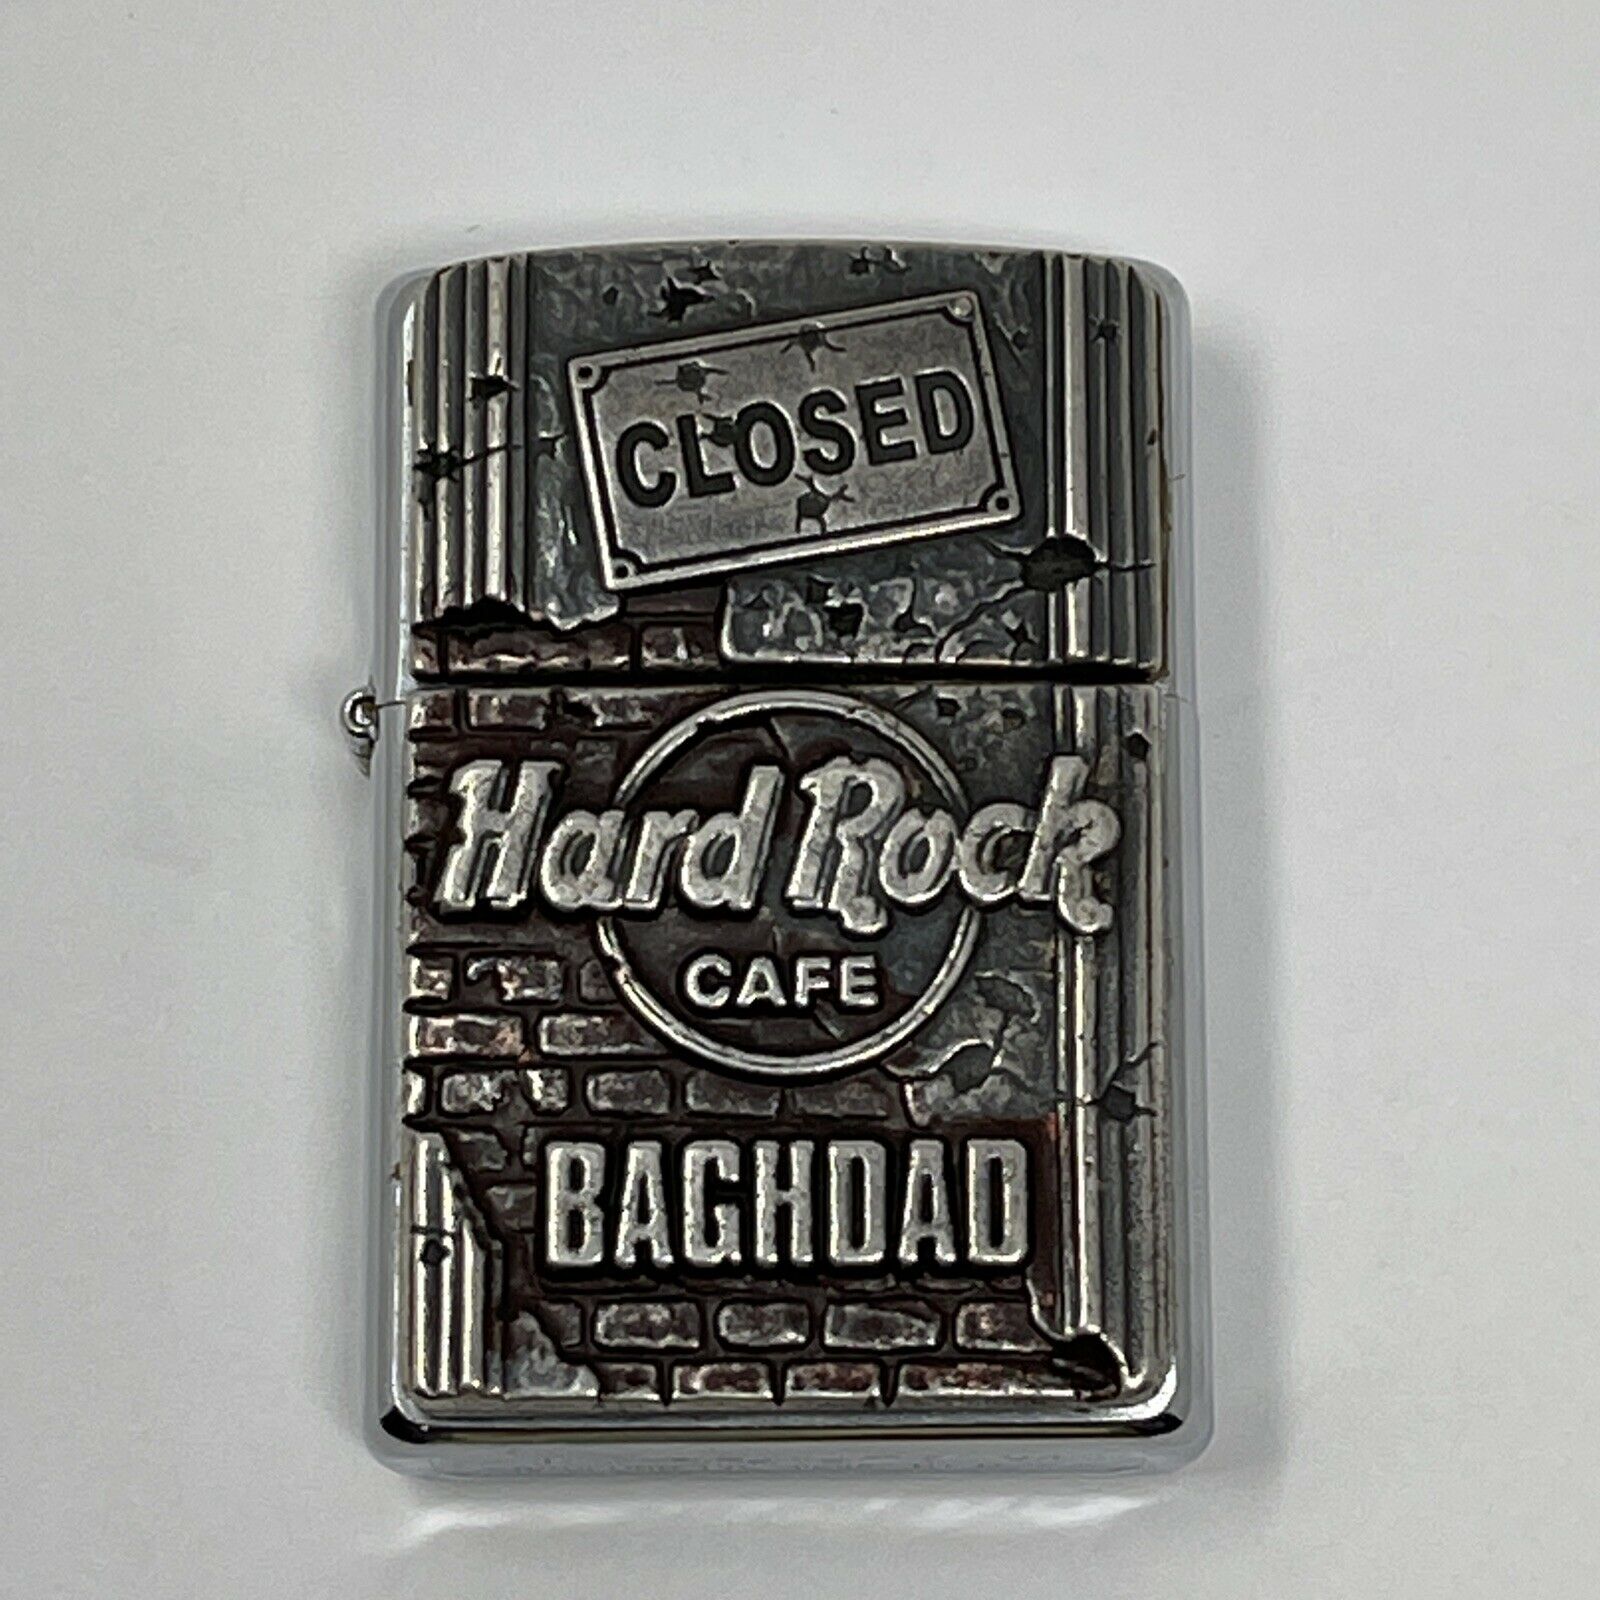 Hard Rock Cafe Baghdad Closed Vintage Zippo Lighter Logo Bradford Pa